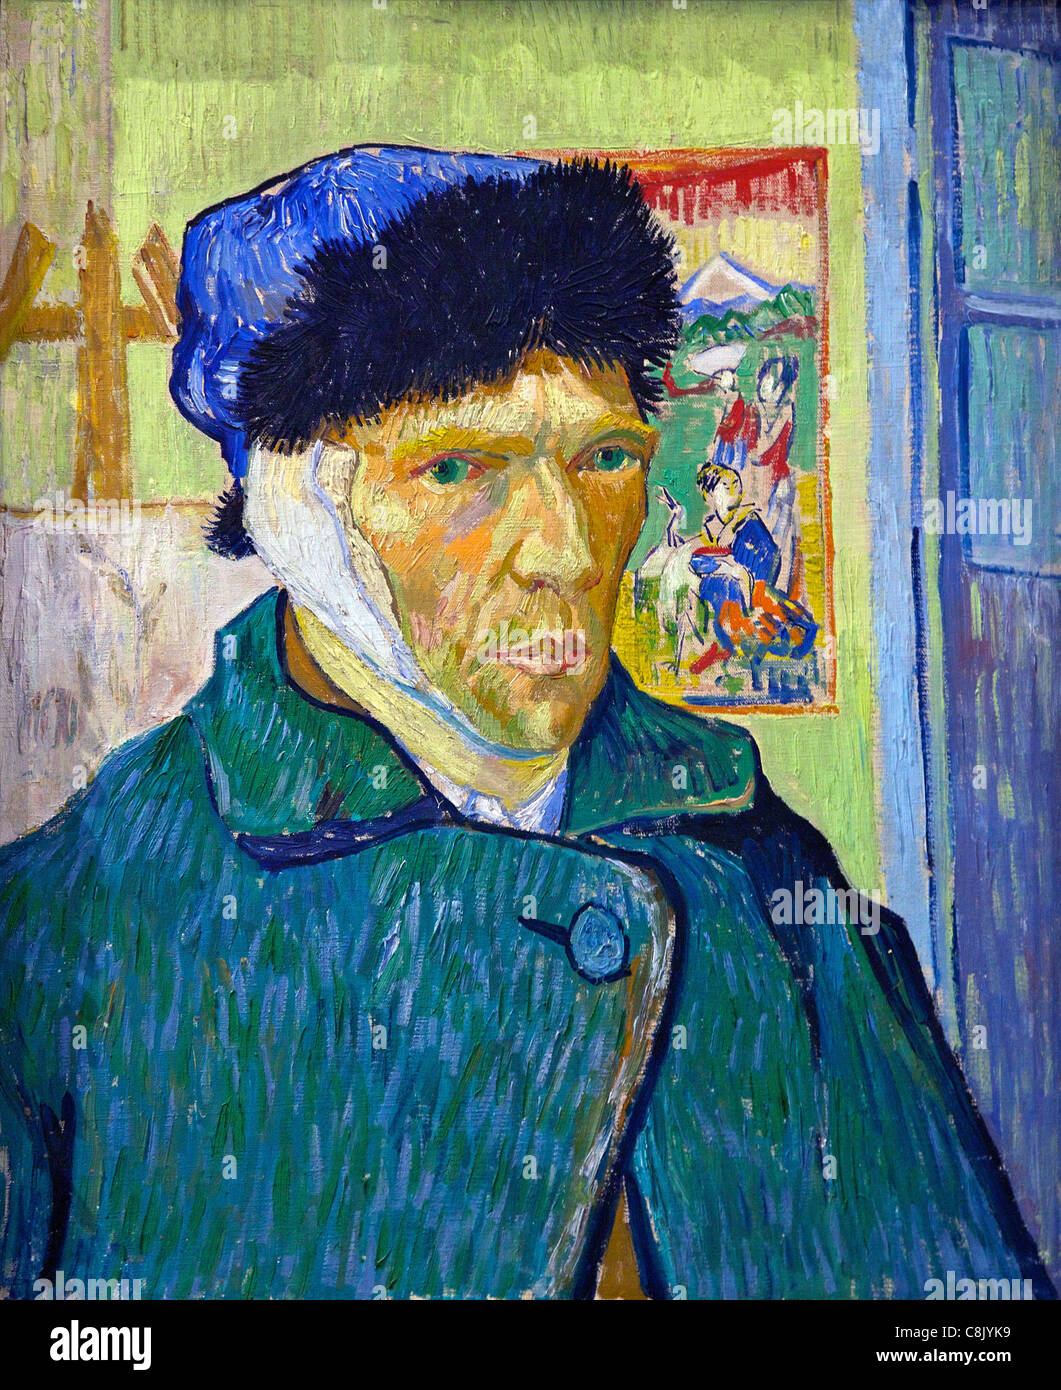 Autoportrait avec une oreille bandée, par Vincent van Gogh, 1889, Courtauld Galeries, Somerset House, Londres, Angleterre, Royaume-Uni, Banque D'Images